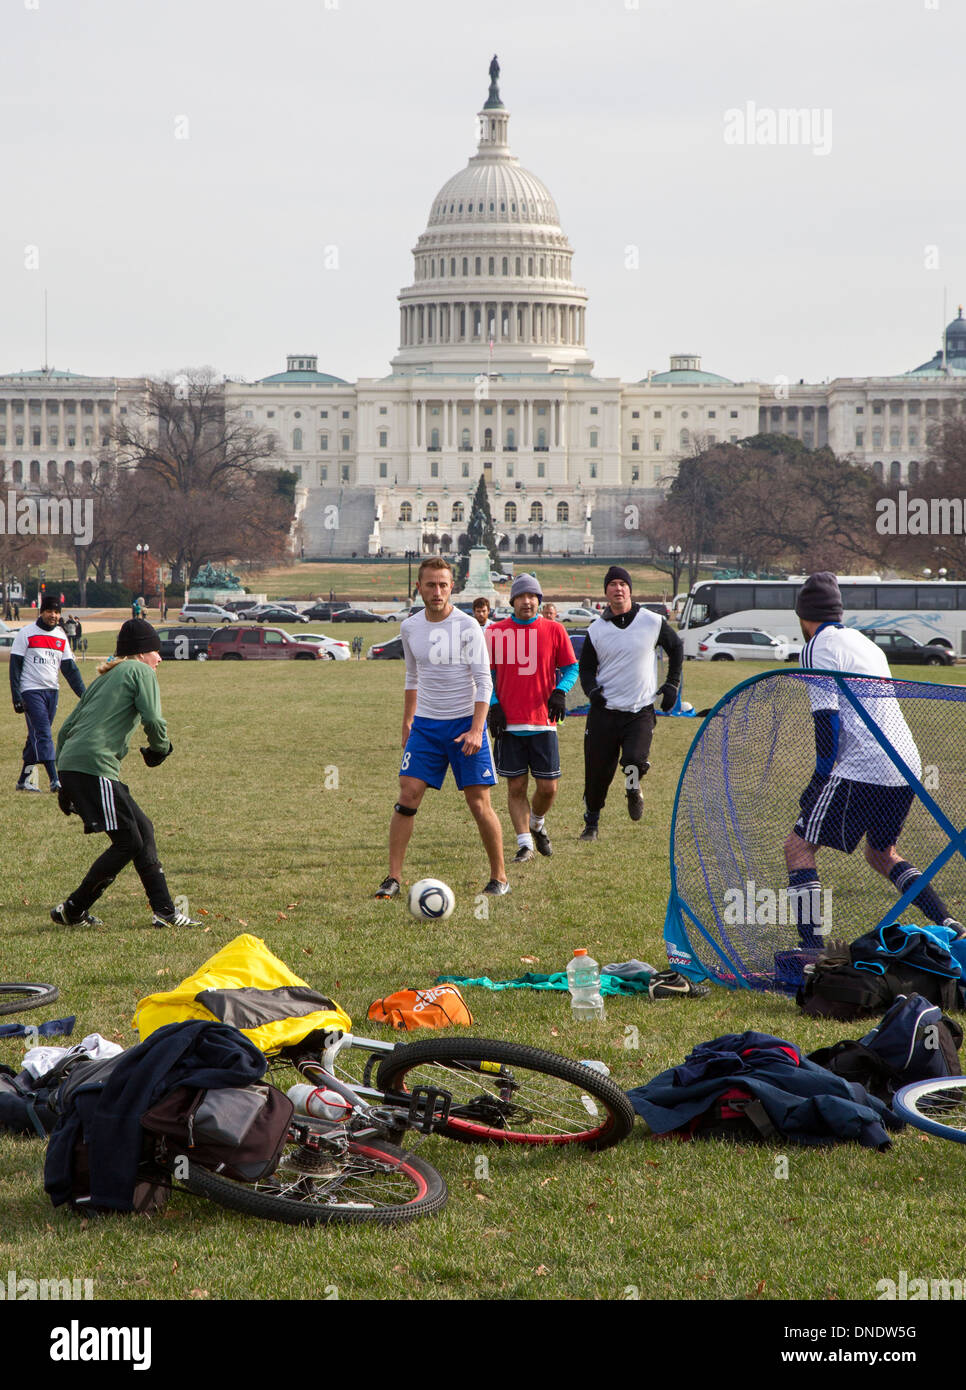 Washington, DC - hommes jouent un jeu de football informel sur le National Mall près du Capitole. Banque D'Images